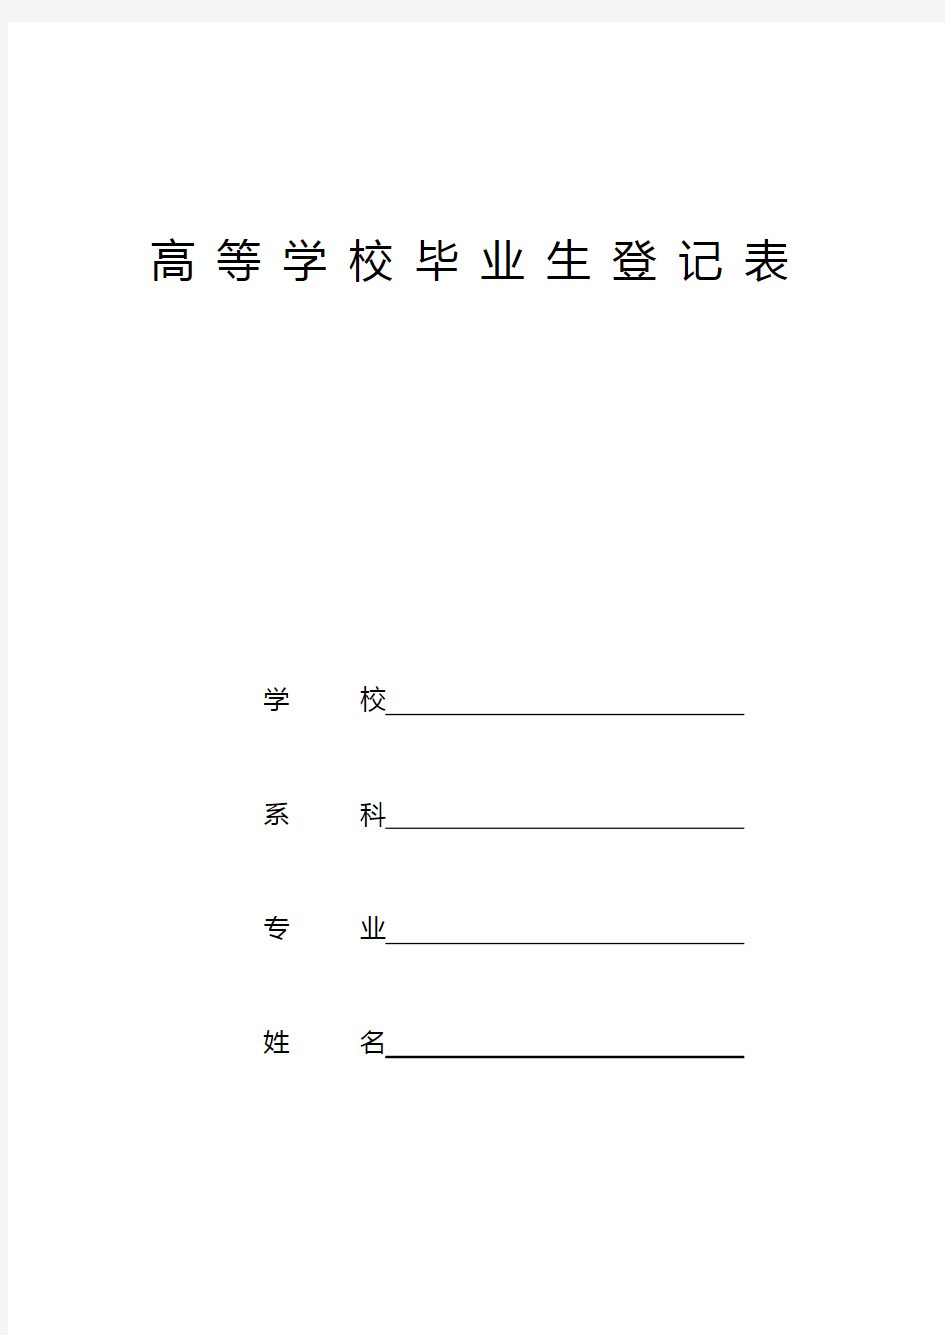 贵州省高等学校毕业生登记表-实用模板